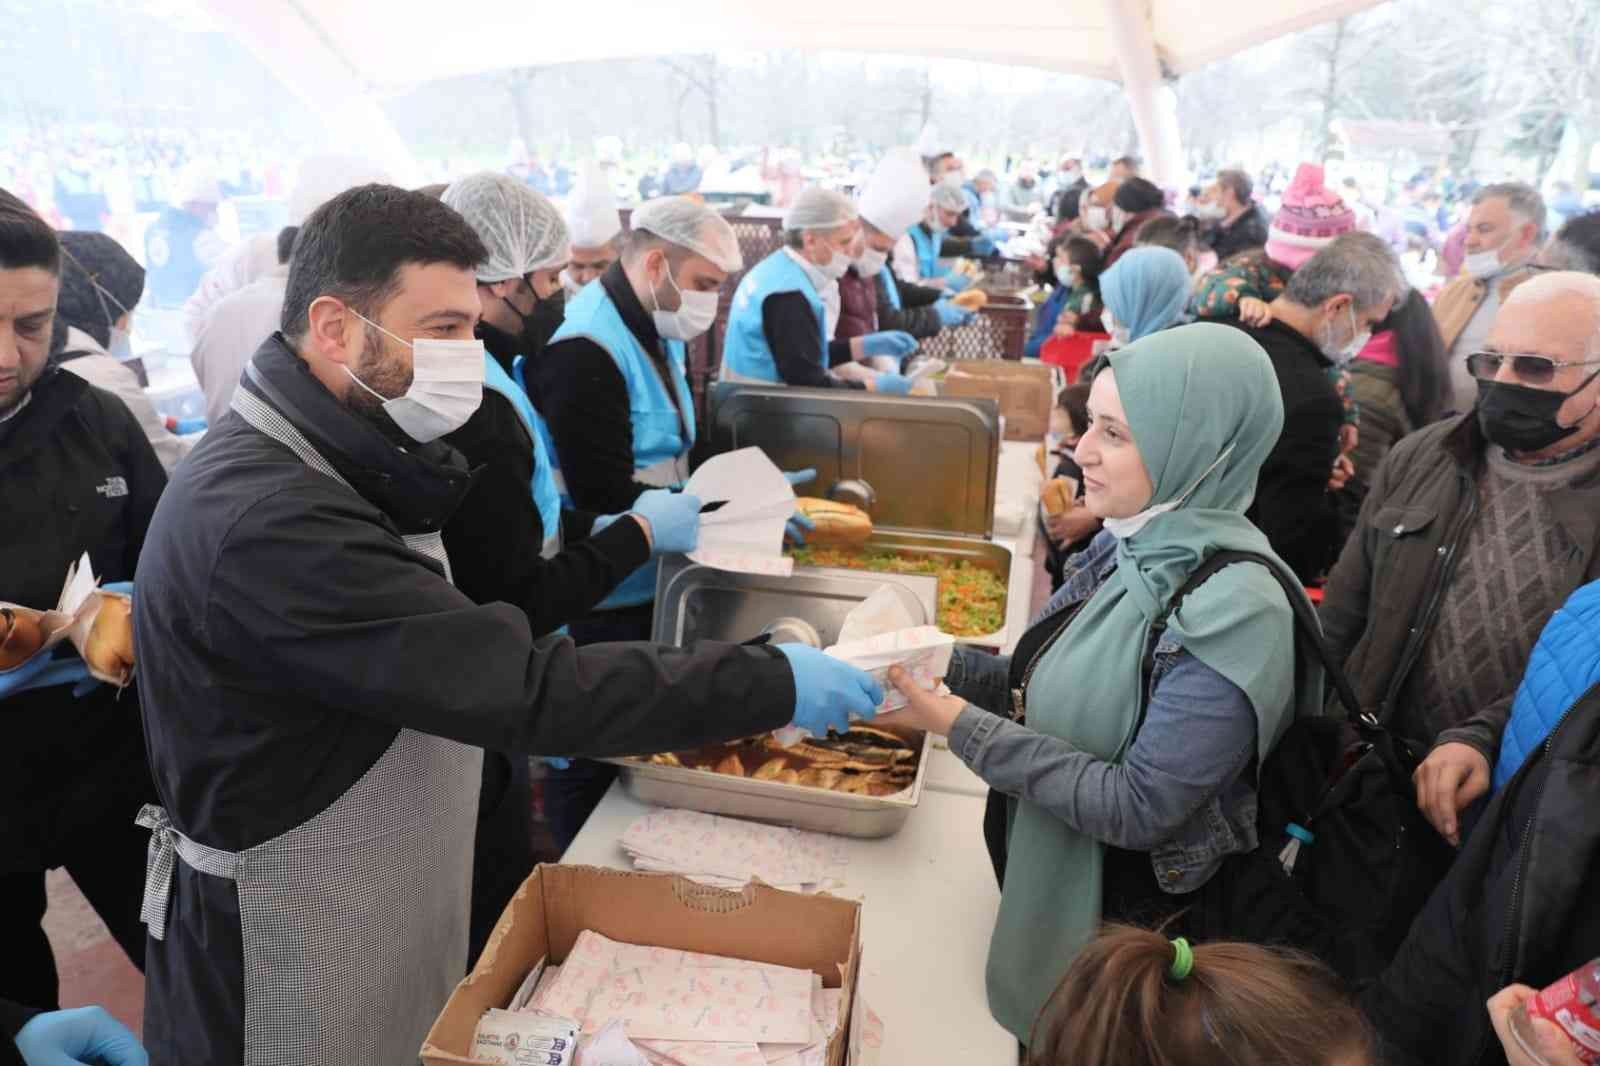 Kağıthaneliler kışın tadını balık ekmek festivalinde çıkardı #istanbul